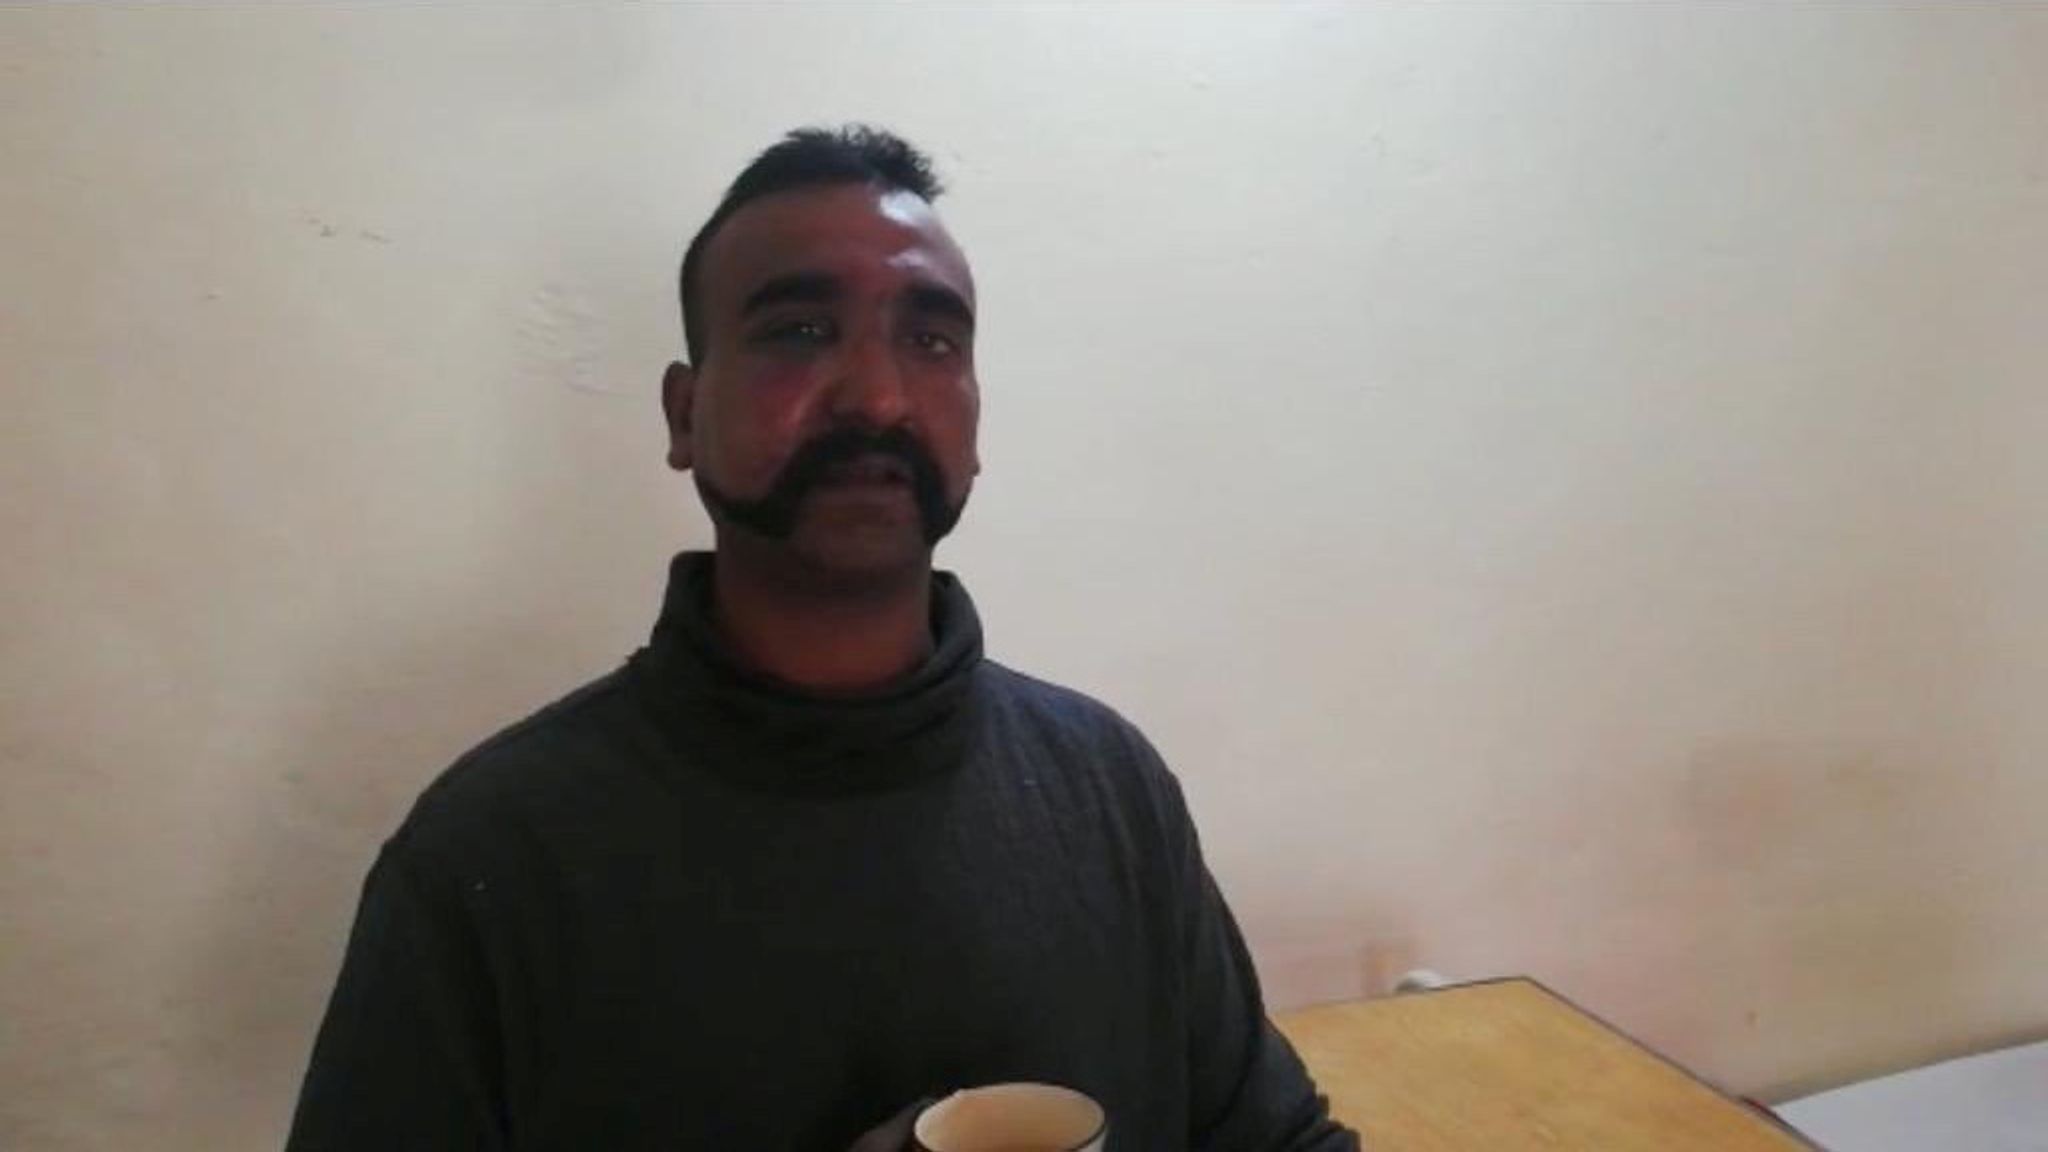 Released Indian Pilot Abhinandan Varthaman Sparks Gunslinger Moustache Trend World News